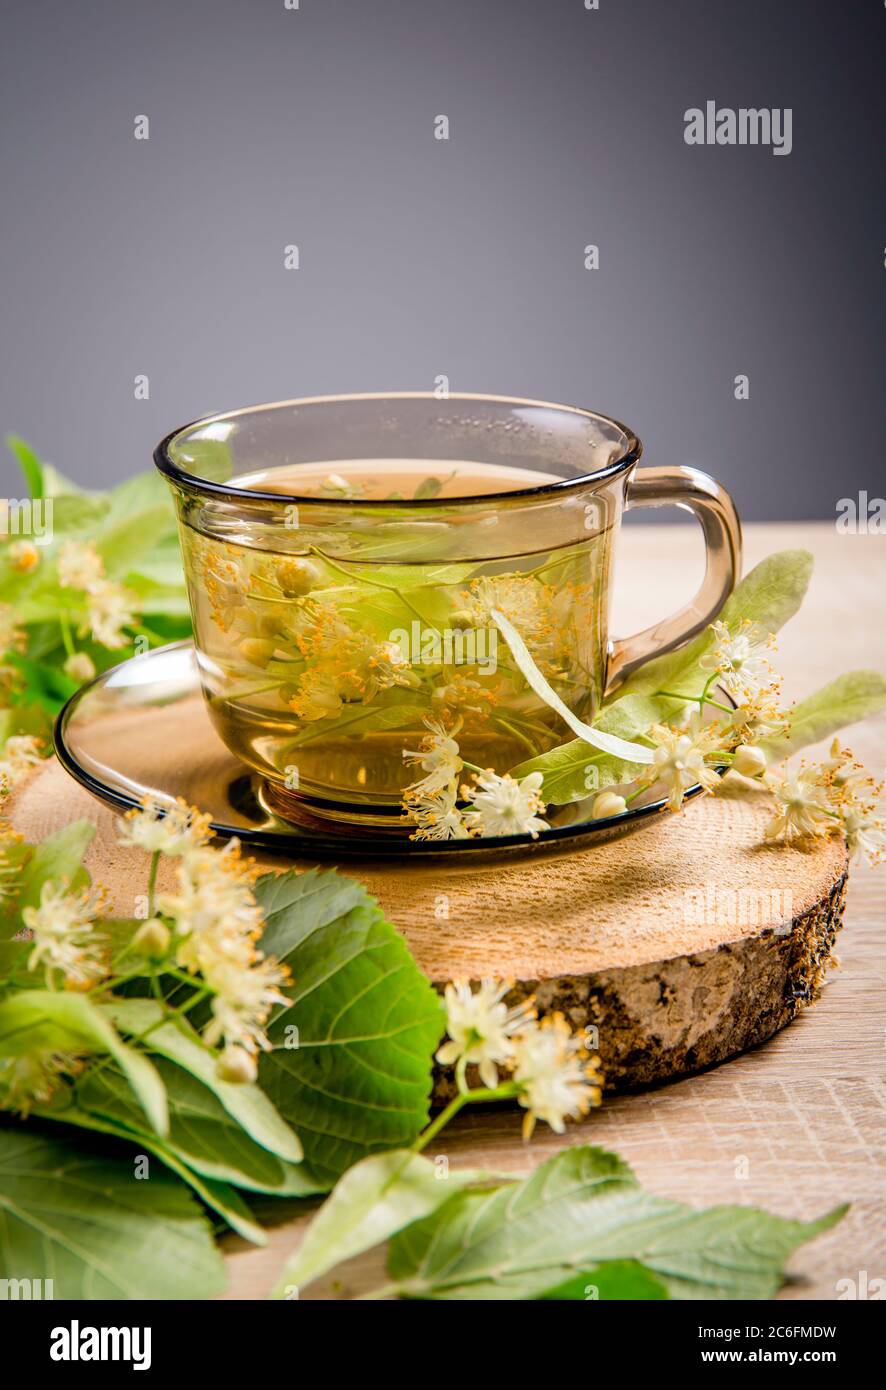 Tilia platyphyllos connu comme thé à base de plantes de linden à grands feuilles, fait d'une fleur fraîchement cueillie avec des feuilles d'arbre et des branches avec des fleurs pour la déco Banque D'Images